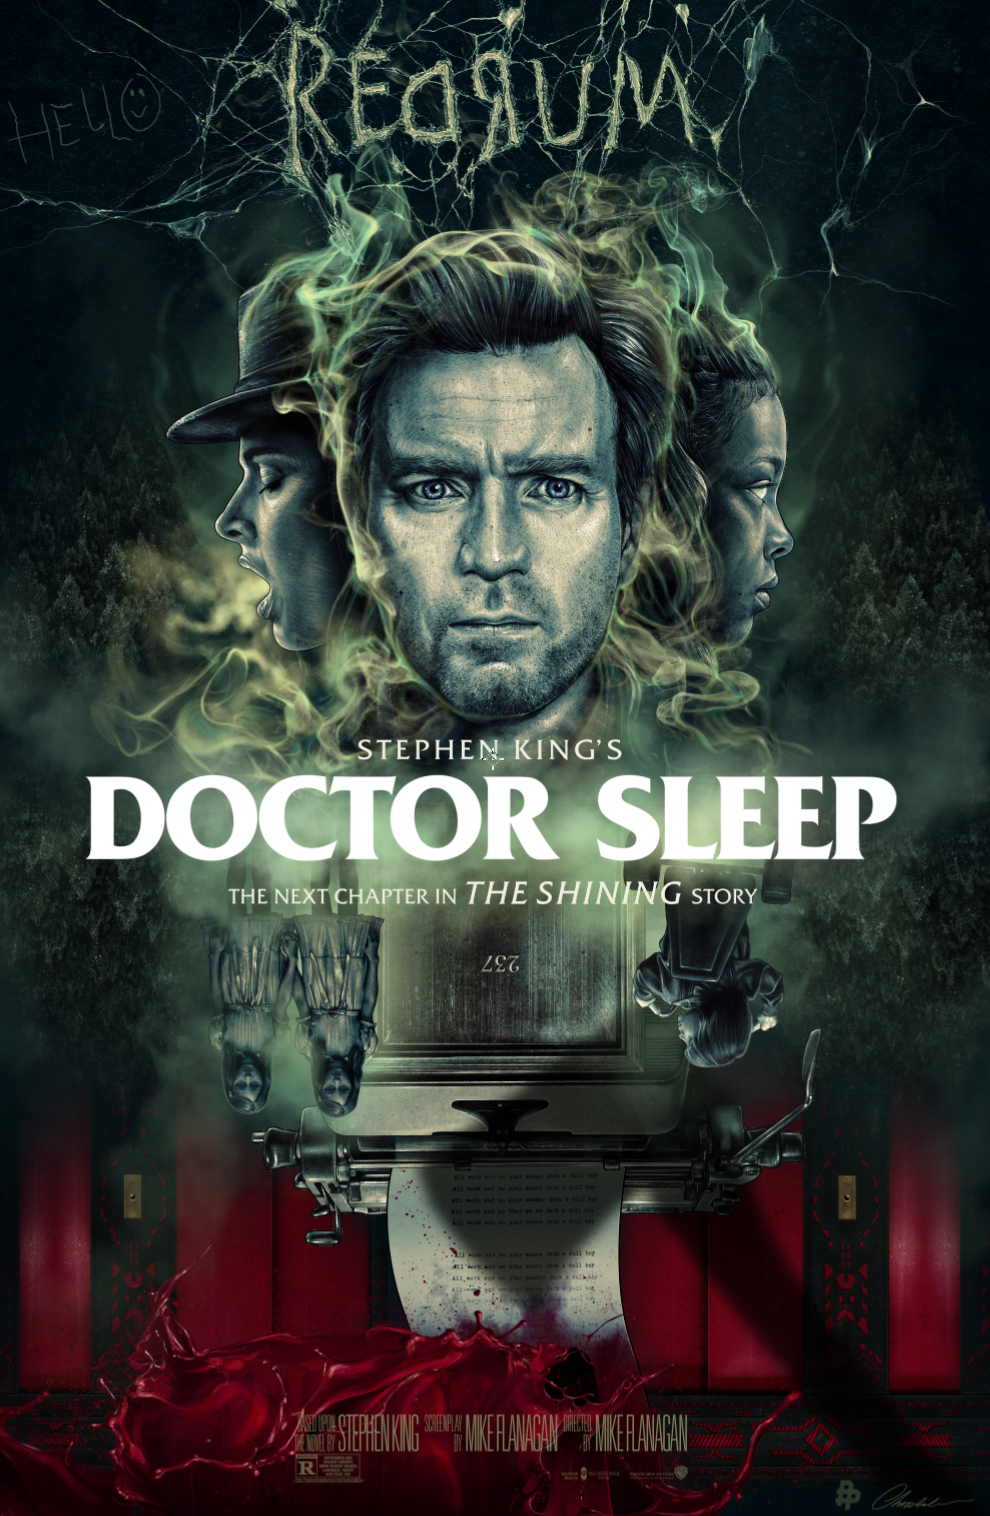 Artwork by Warner Bros. – Doctor Sleep